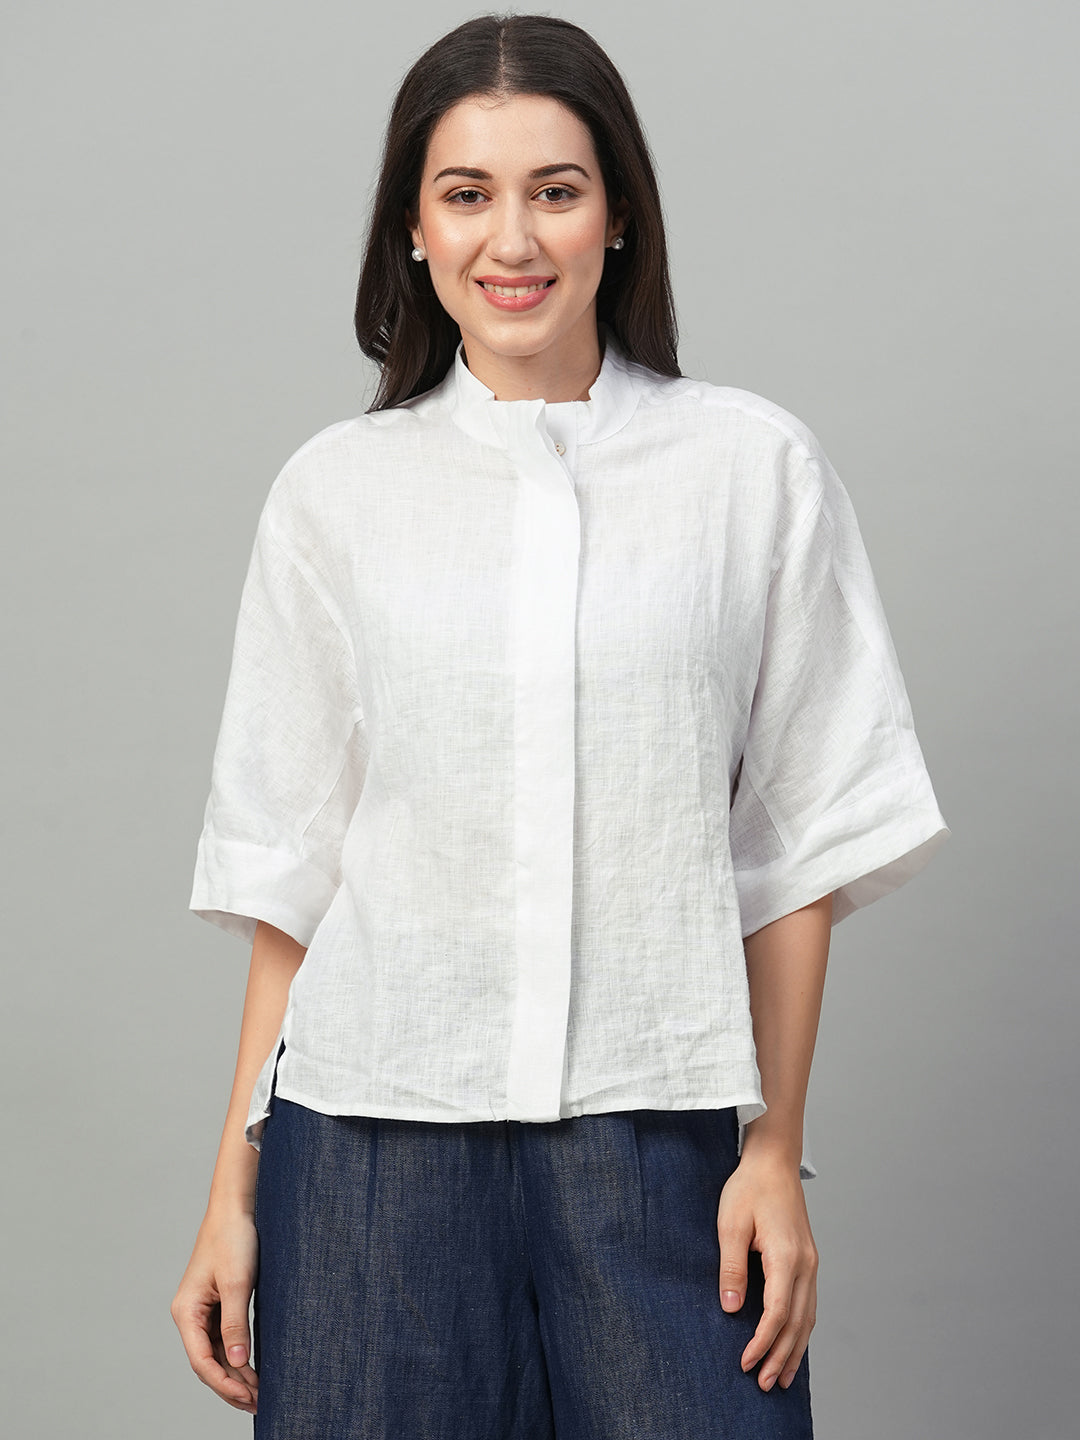 Women's White Linen Boxy Fit Blouse